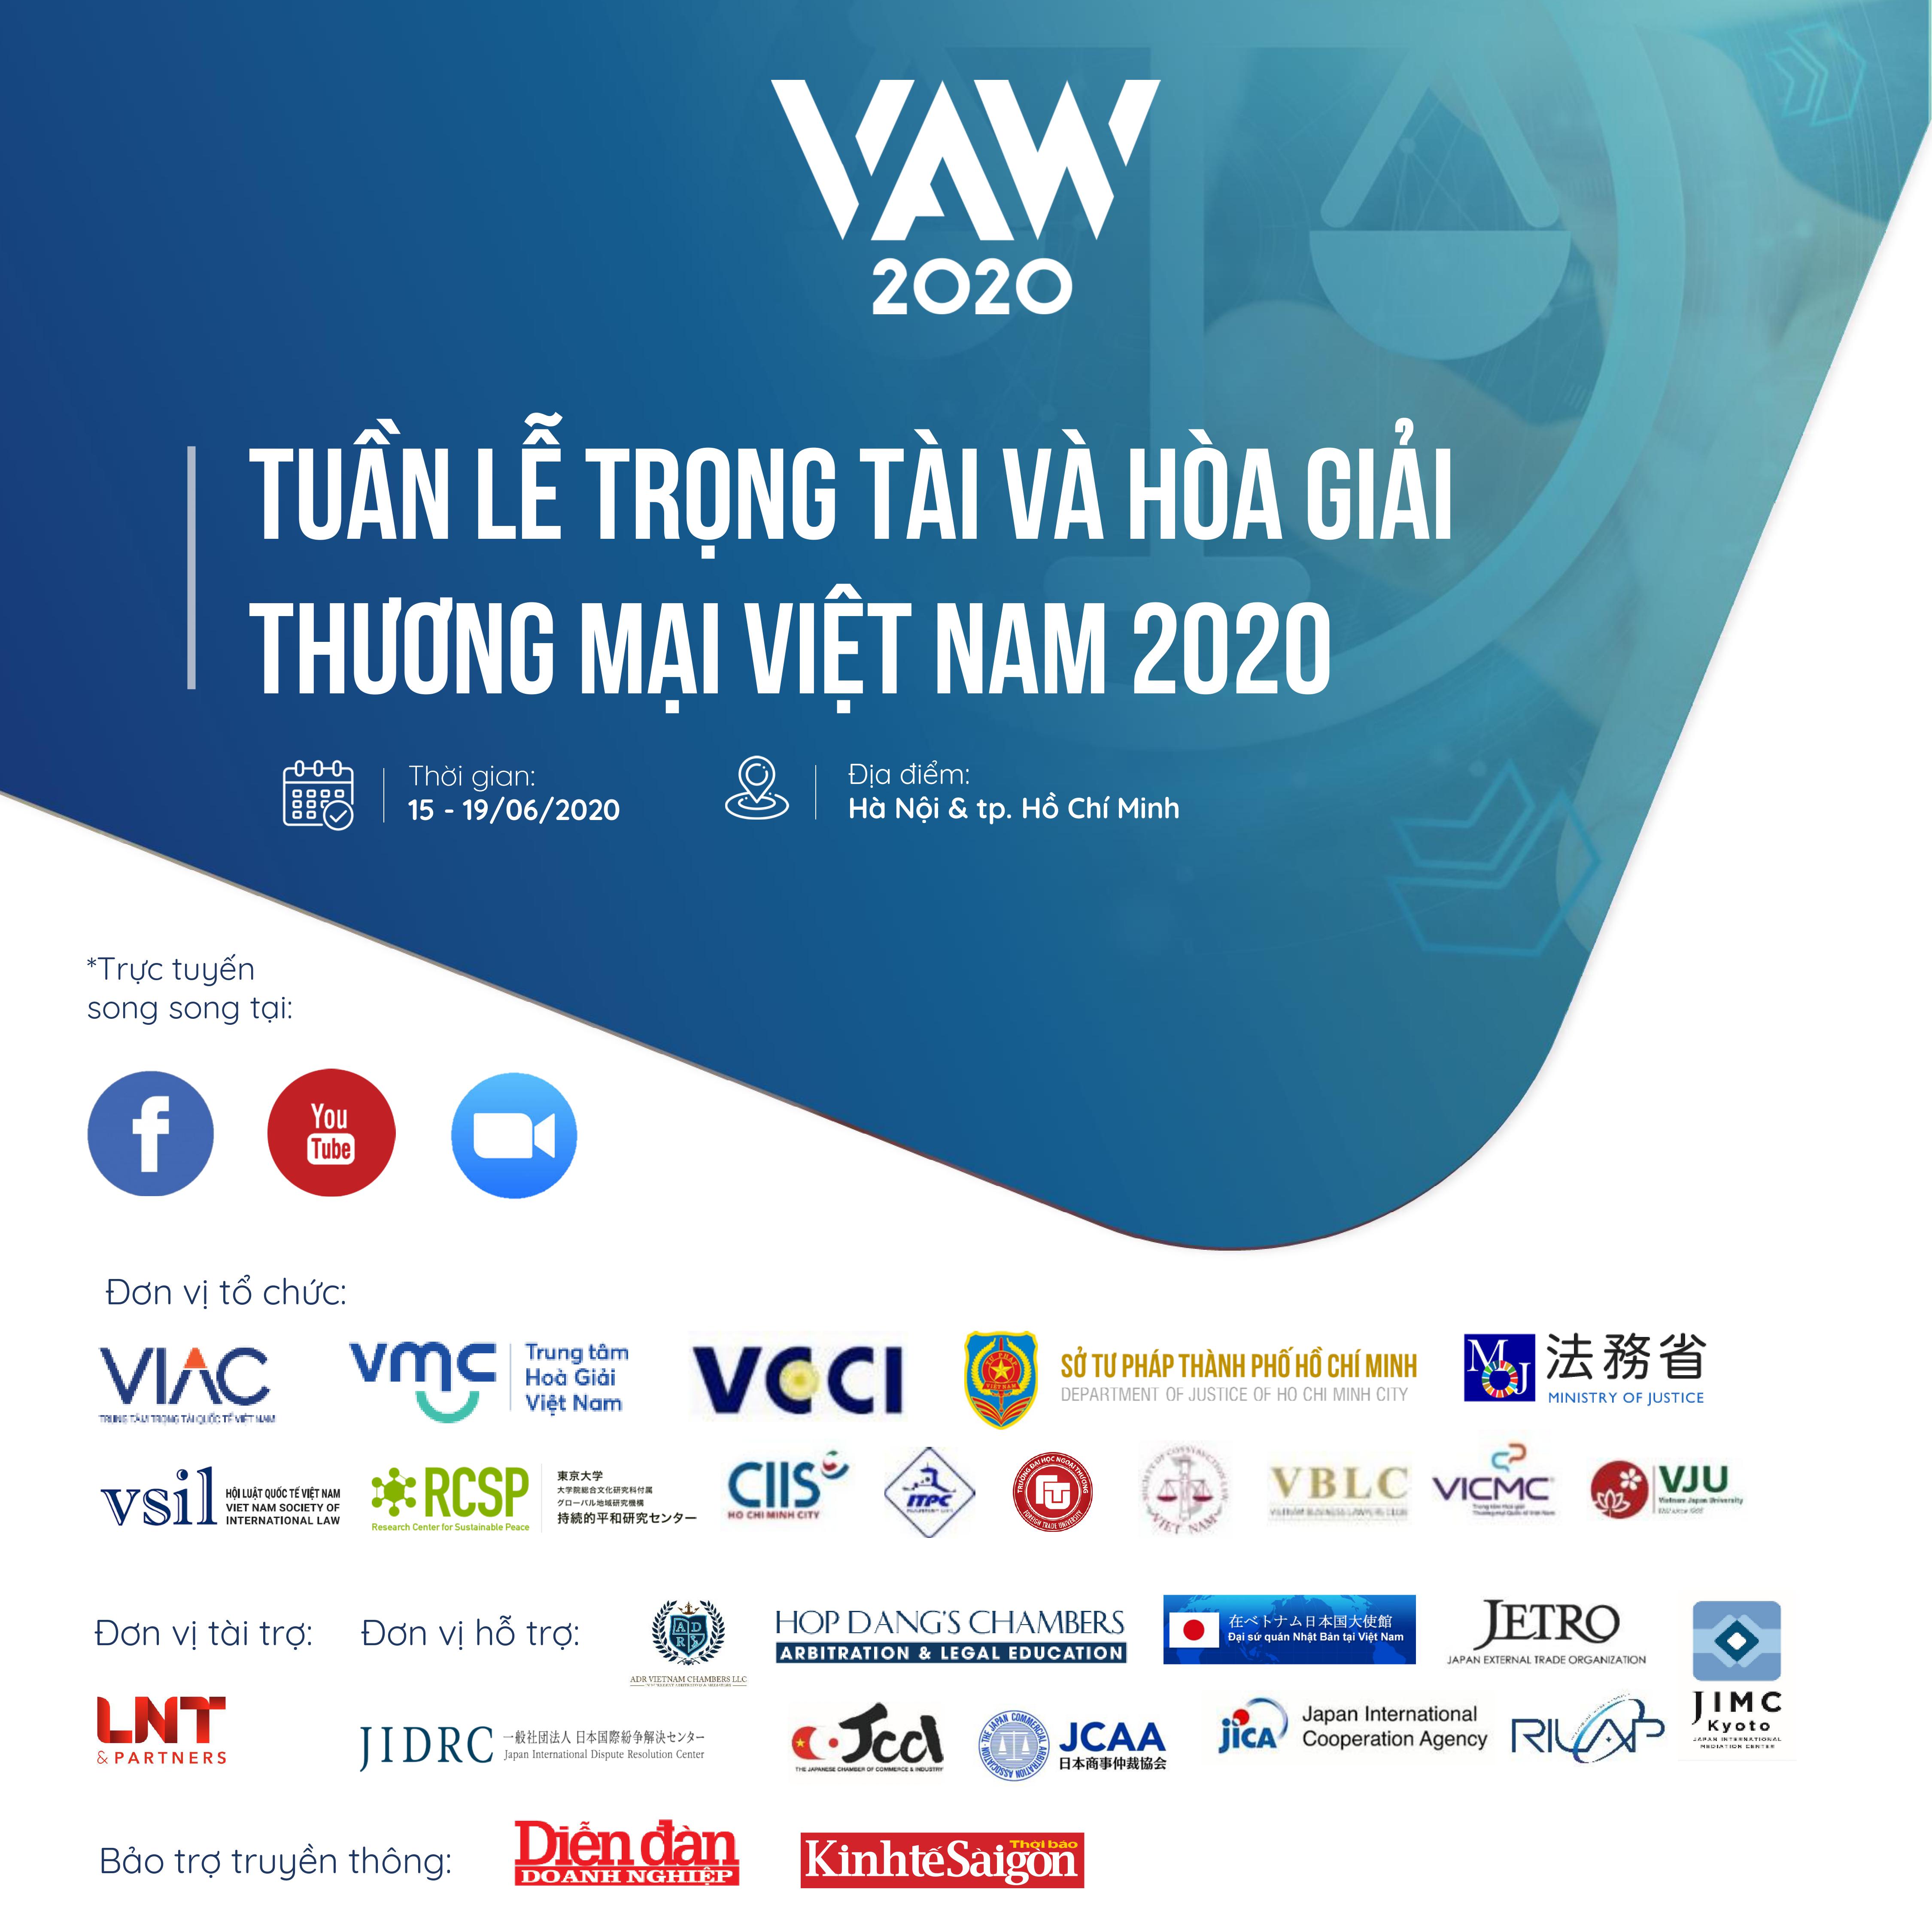 Vietnam ADRs Week 2020 – Chuỗi sự kiện Tuần lễ Trọng tài và Hòa giải Việt Nam  2020